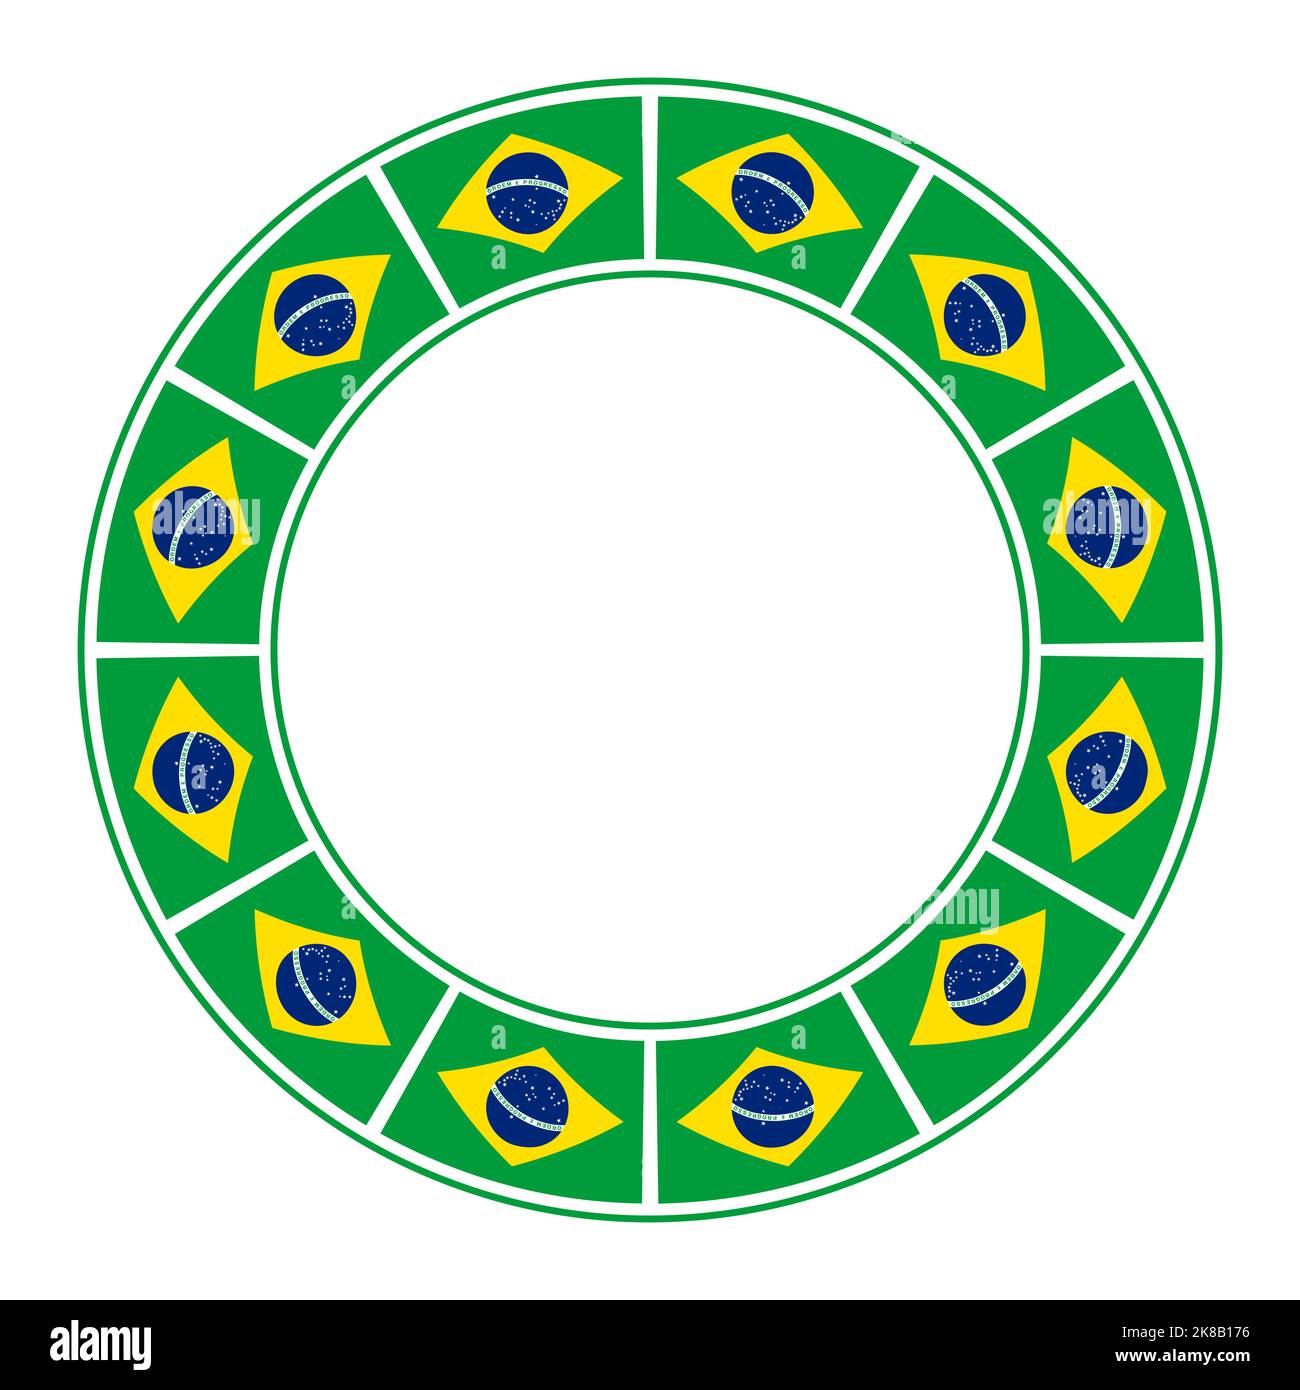 Flagge Brasiliens, Kreisrahmen. Grenze, aus dem wiederholten Motiv der Nationalflagge Brasiliens. Stockfoto